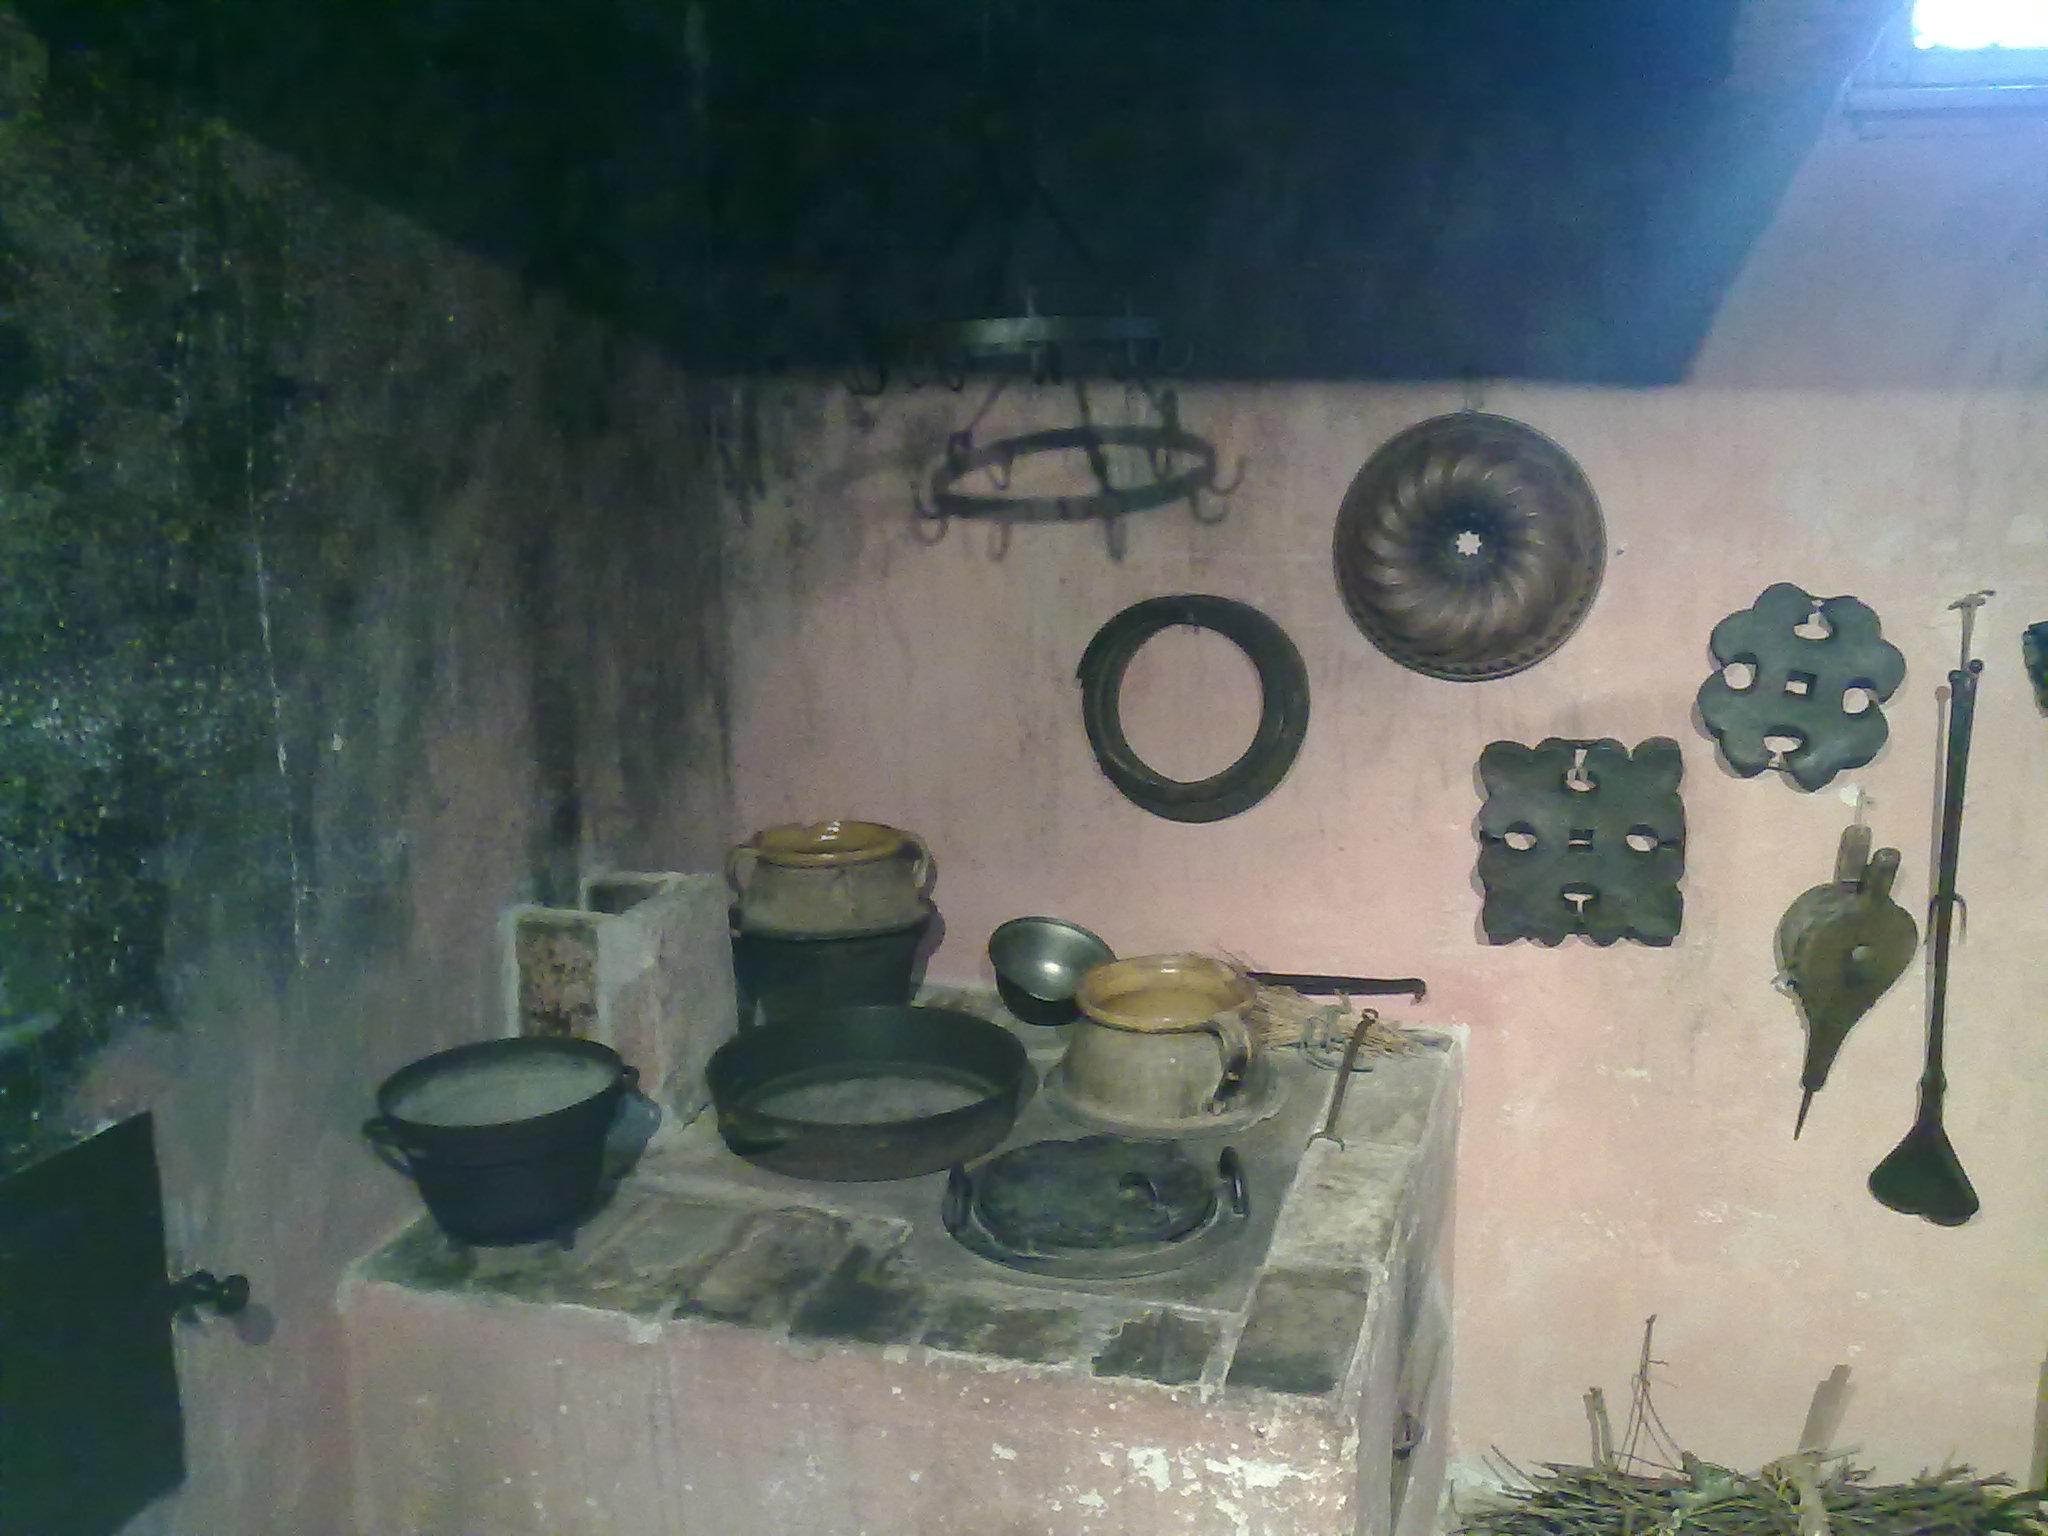 Historische Küche